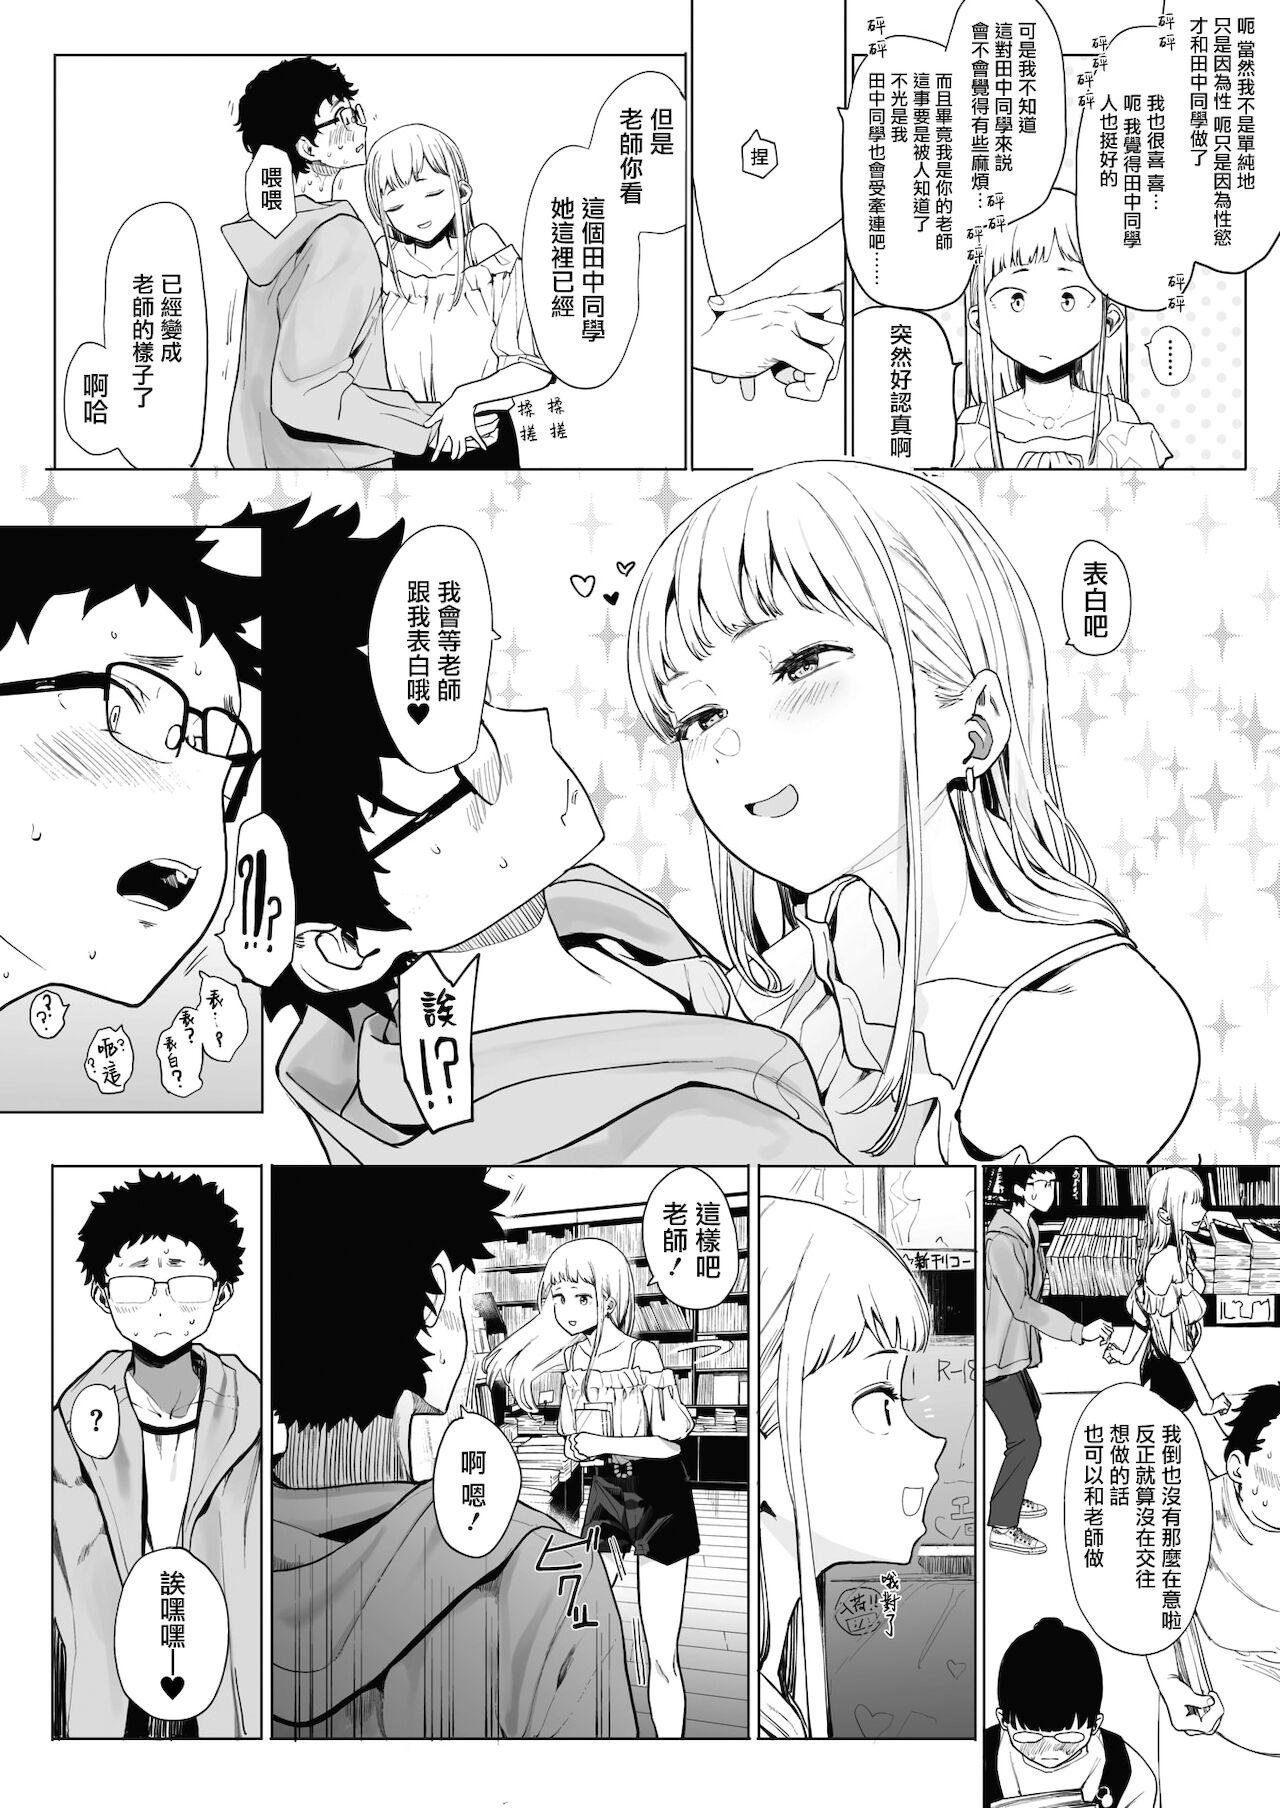 EIGHTMANsensei no okage de Kanojo ga dekimashita! 2 | I Got a Girlfriend with Eightman-sensei's Help! 2 5